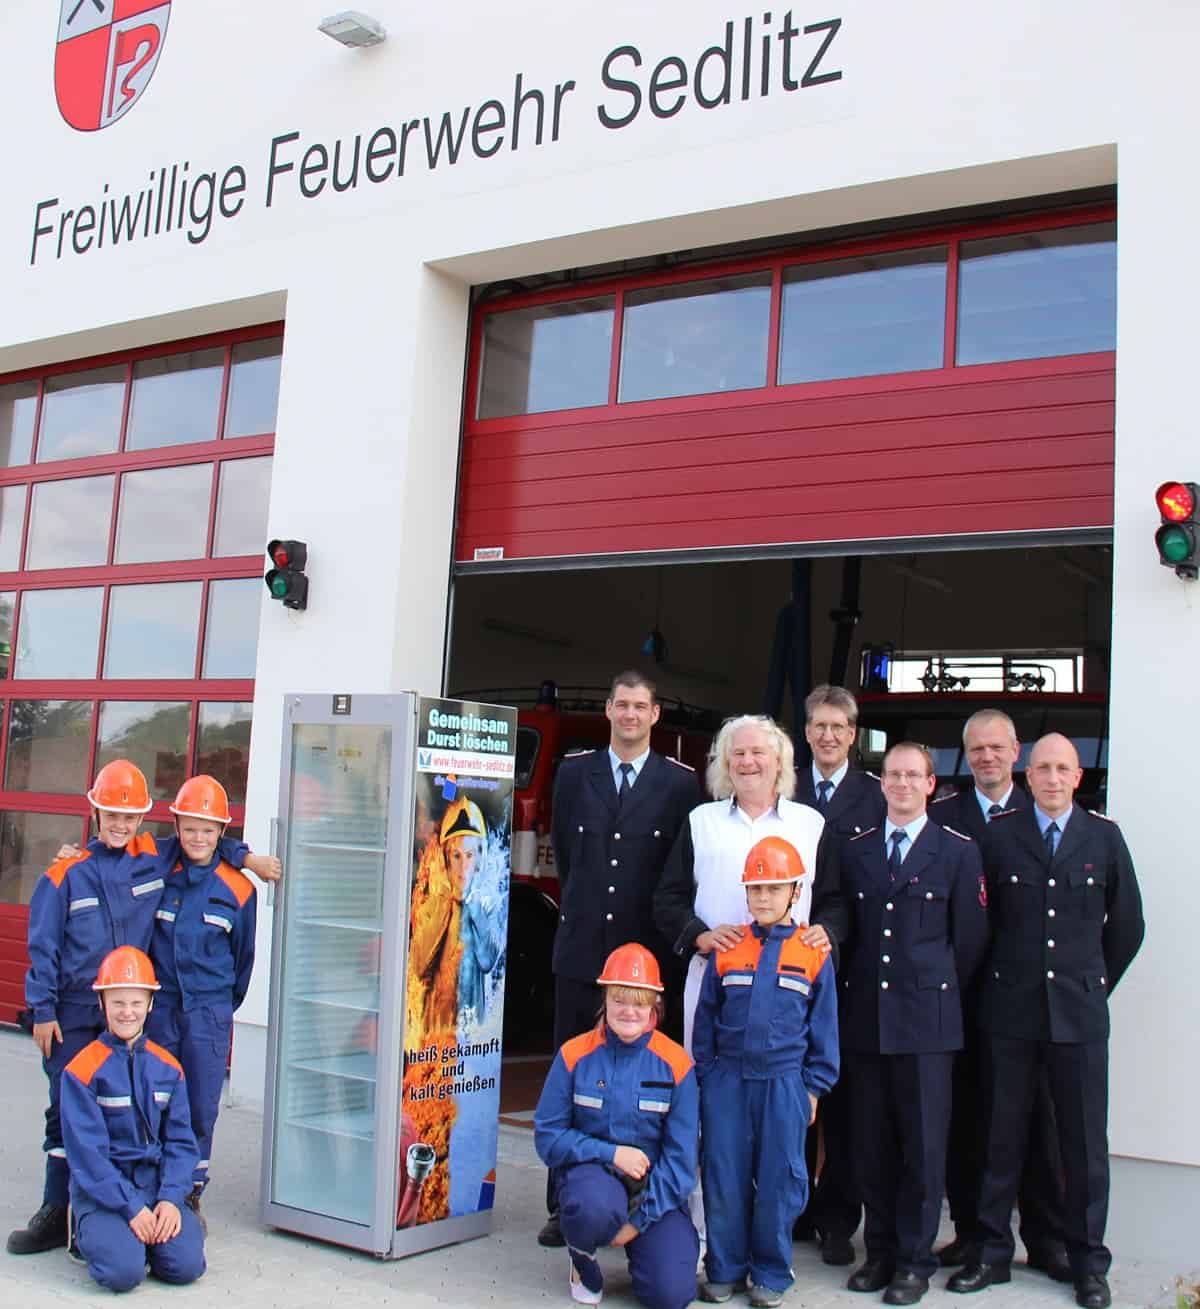 Ein Bild der freiwilligen Feuerwehr Sendlitz.